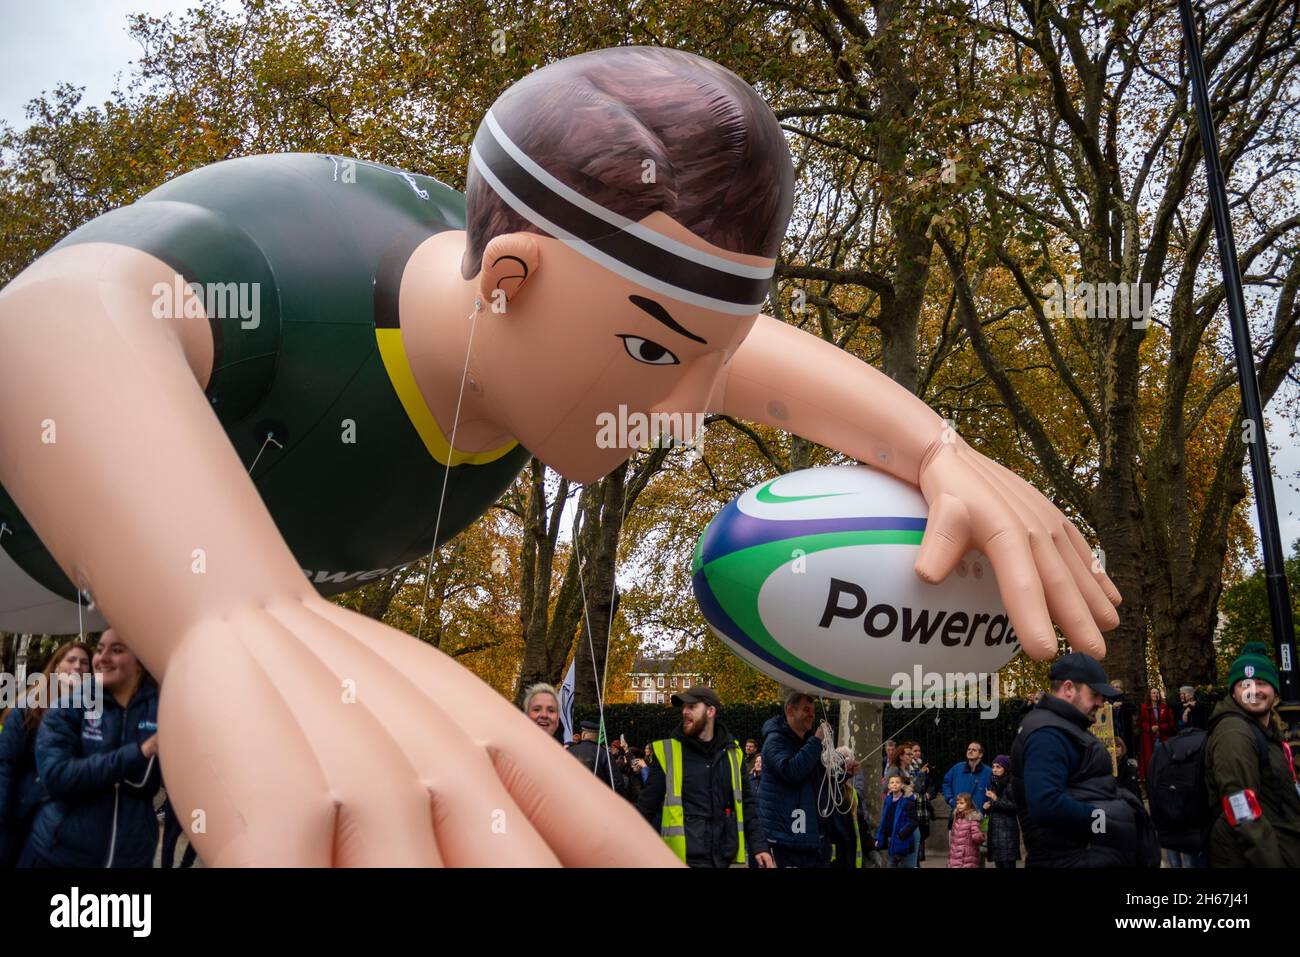 Le club de rugby irlandais de Londres et Powerday flottent au Lord Mayor's Show, Parade, procession, Londres, Royaume-Uni.Joueur de rugby gonflable géant, ballon Banque D'Images